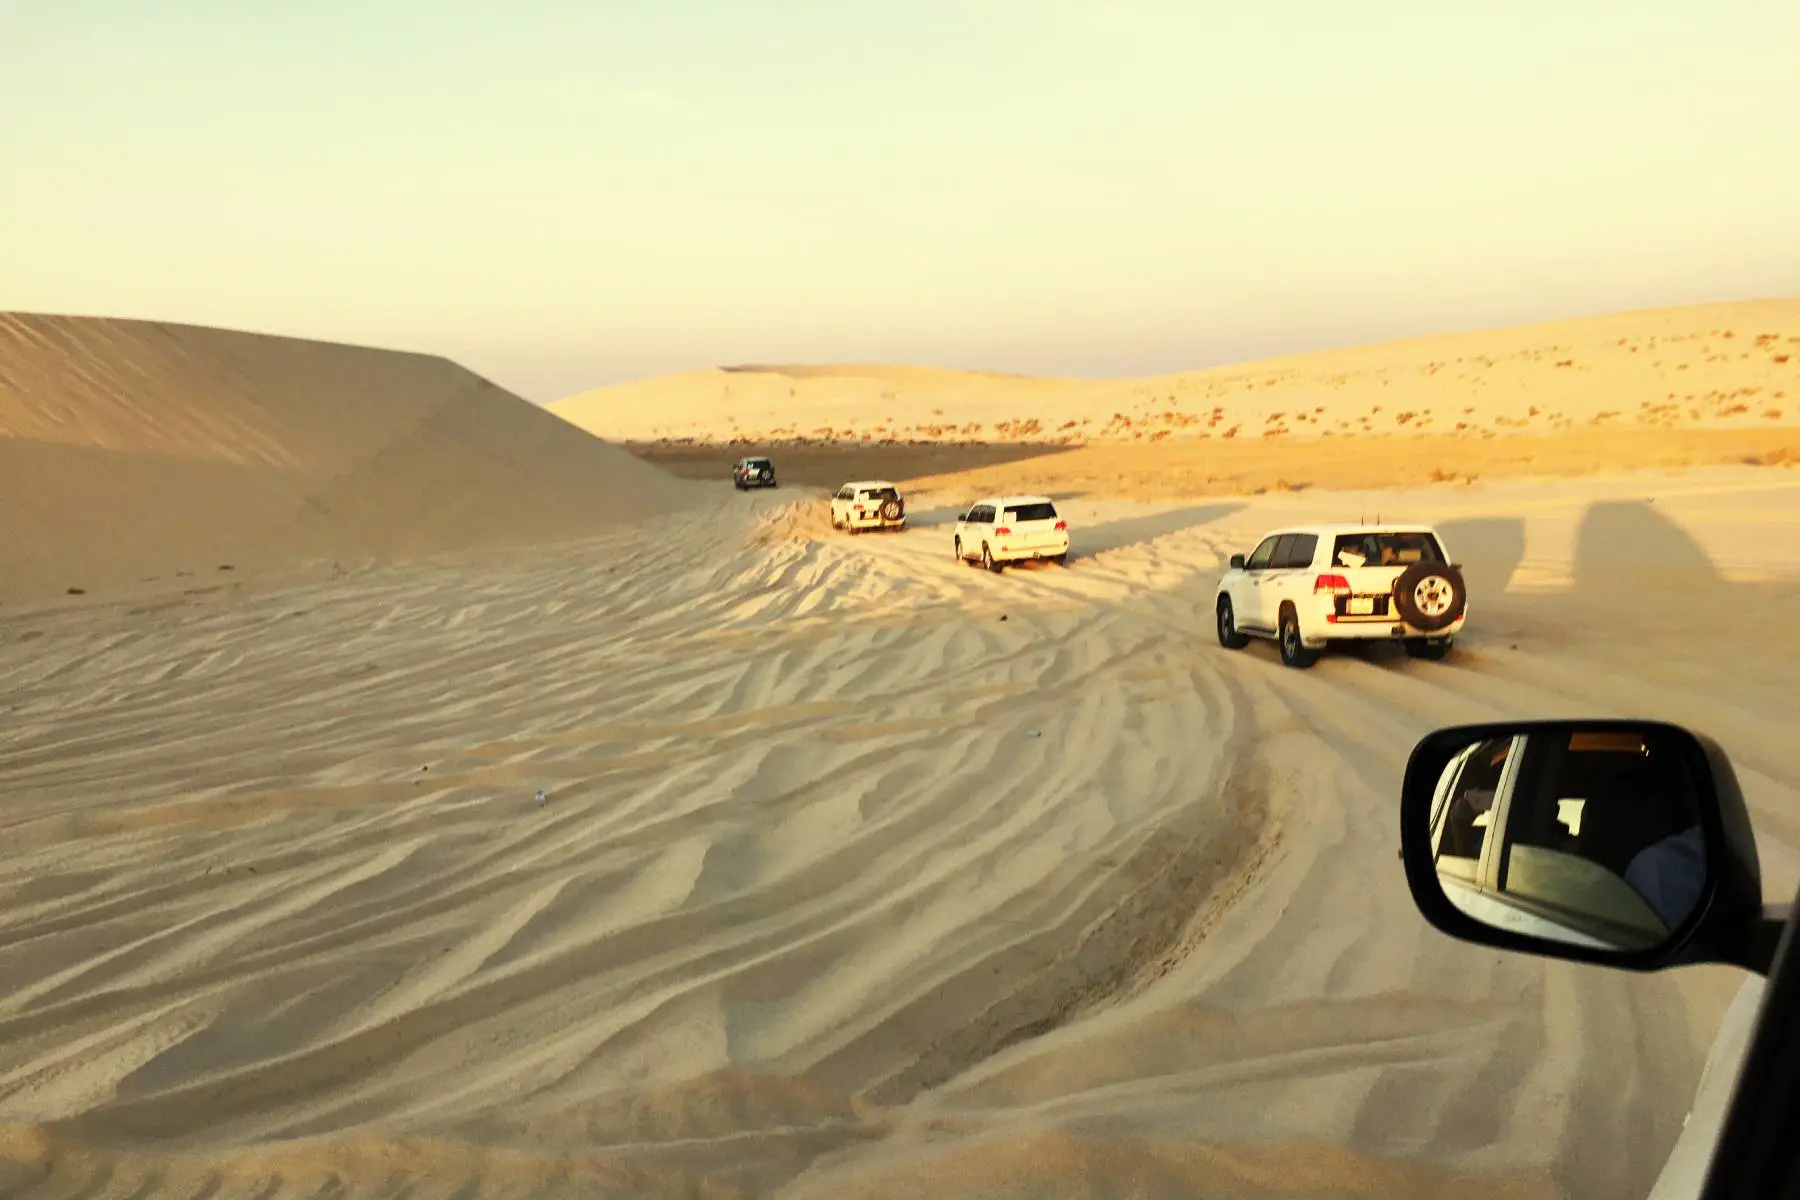 Cars driving in a line through the Ash Shaqra' desert in Qatar.